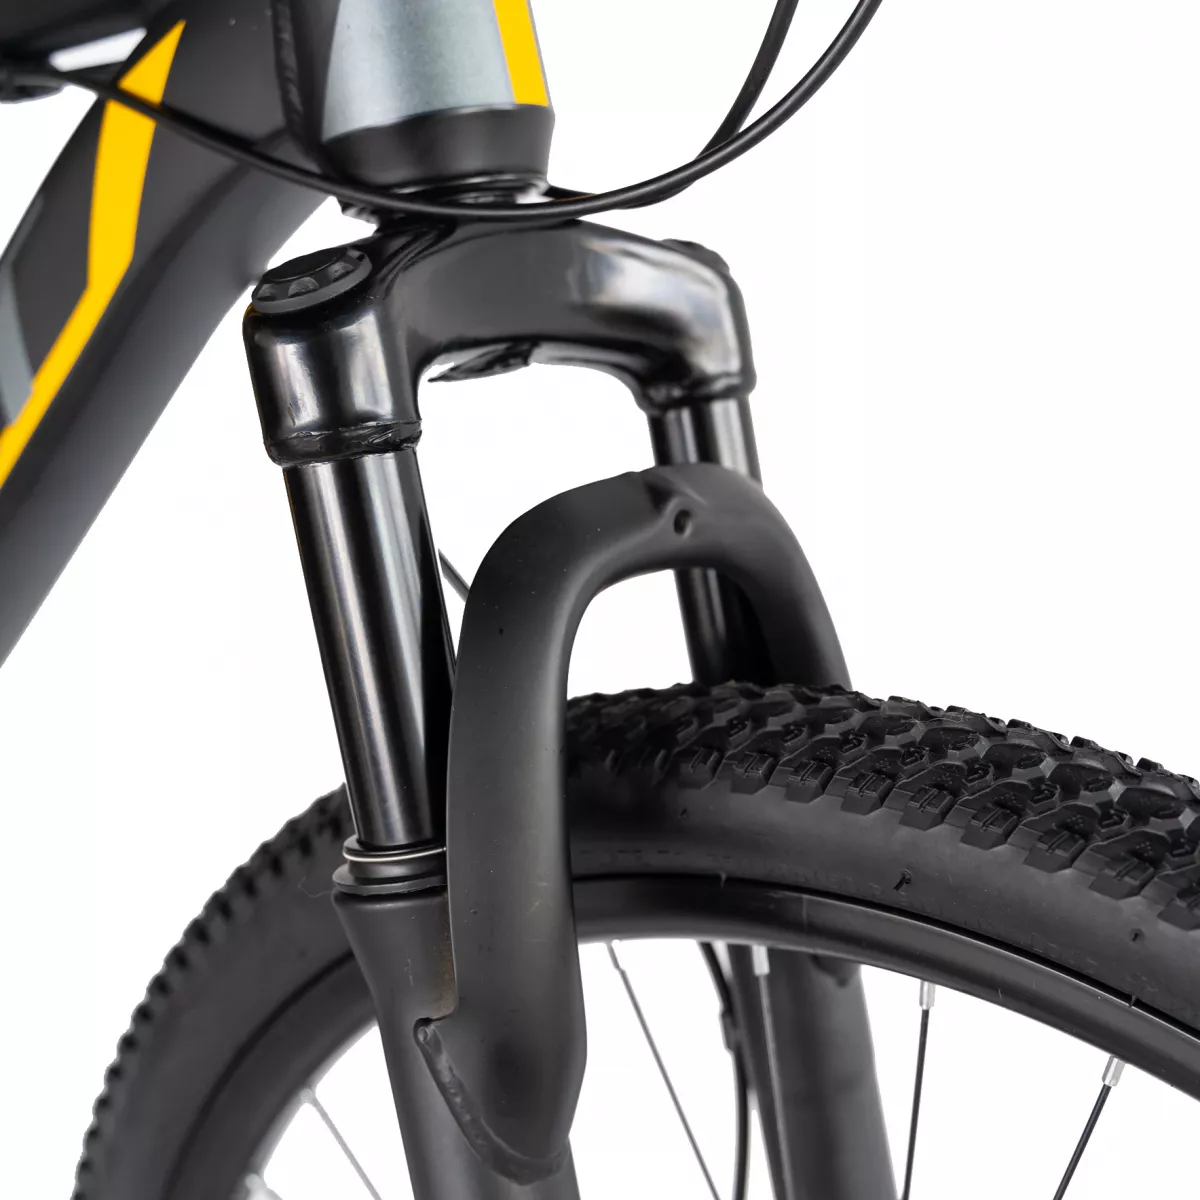 Bicicleta MTB-HT Carpat C2670C, roata 26", cadru aluminiu, 21 viteze, culoare negru/galben